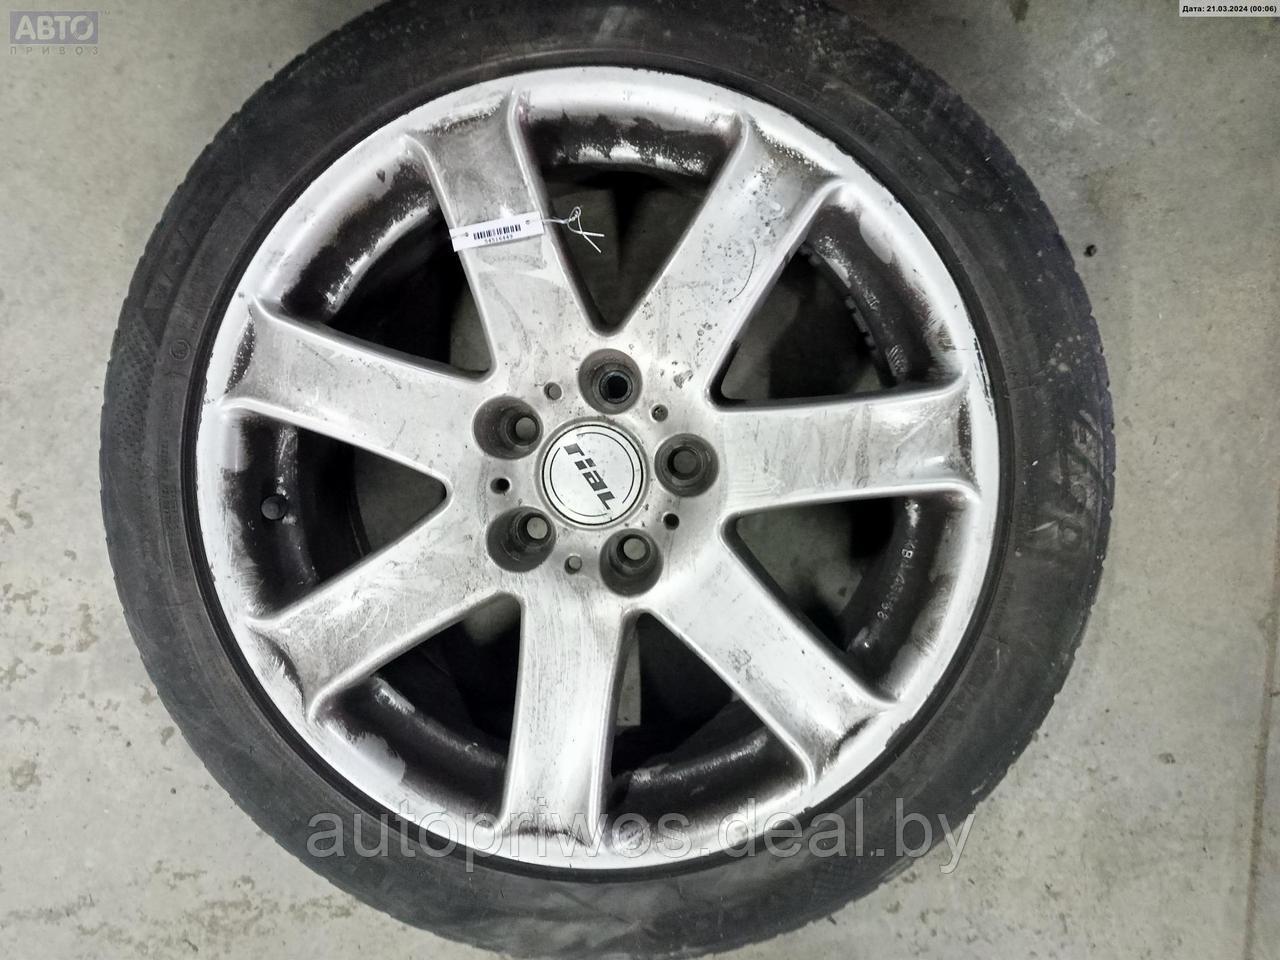 Диск колесный алюминиевый Volkswagen Touran